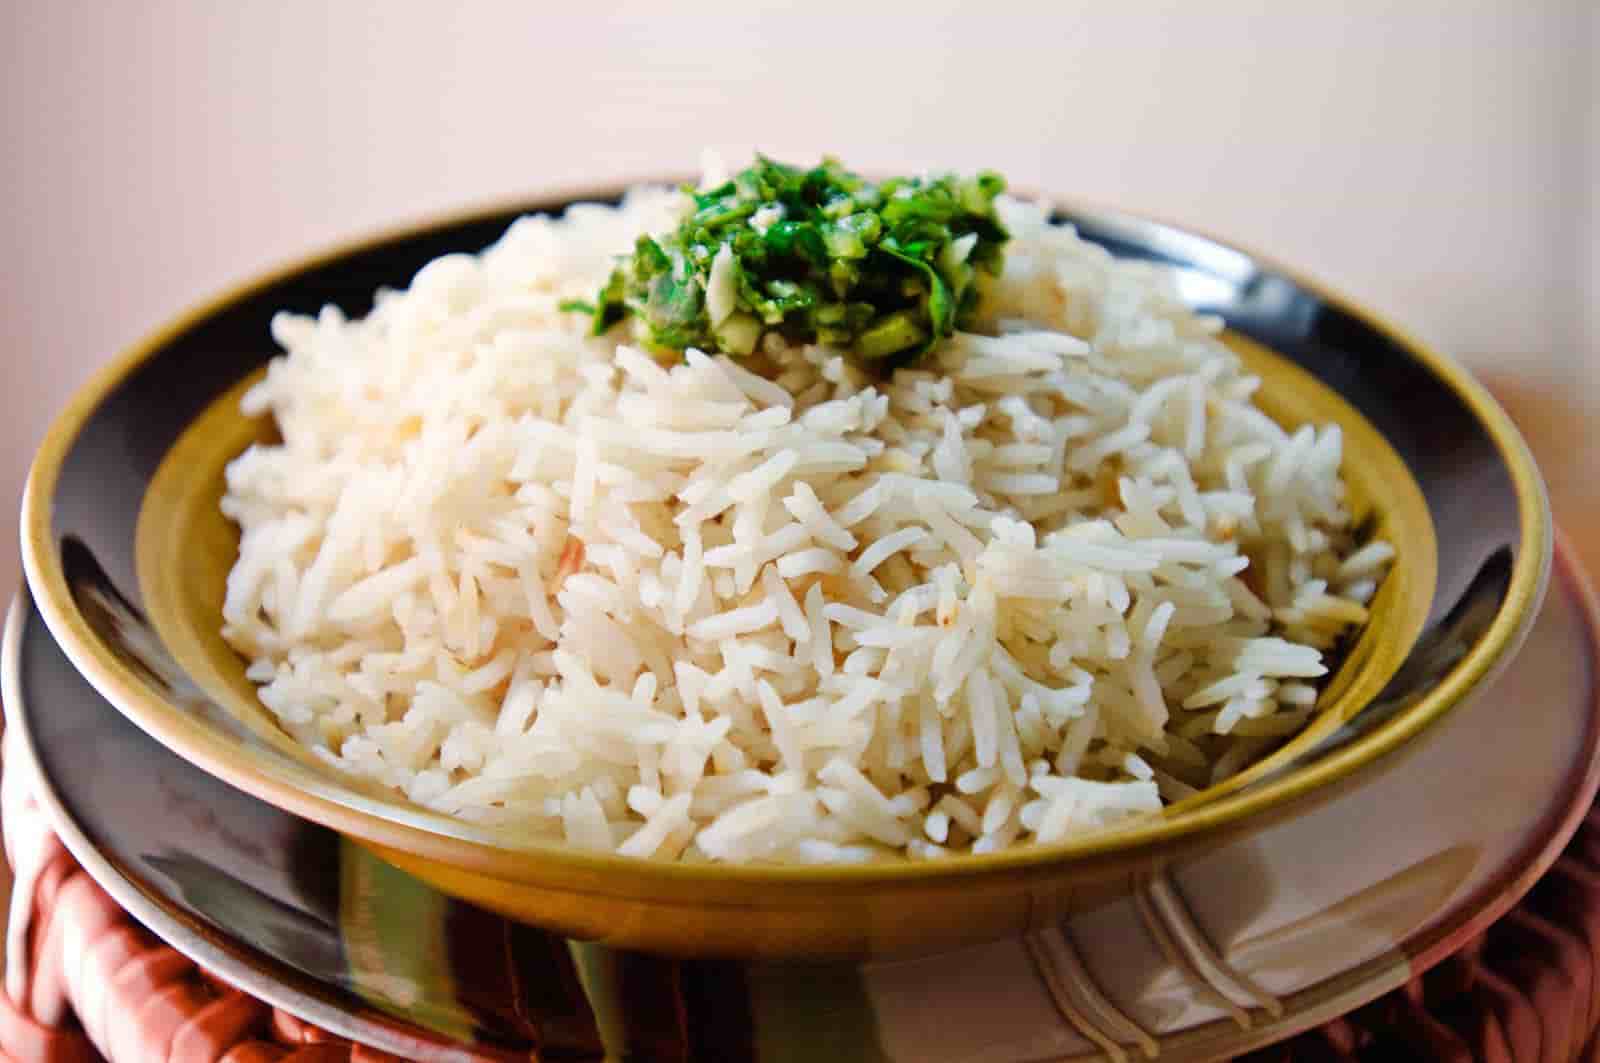 قیمت برنج ایرانی اعلا + خرید باور نکردنی